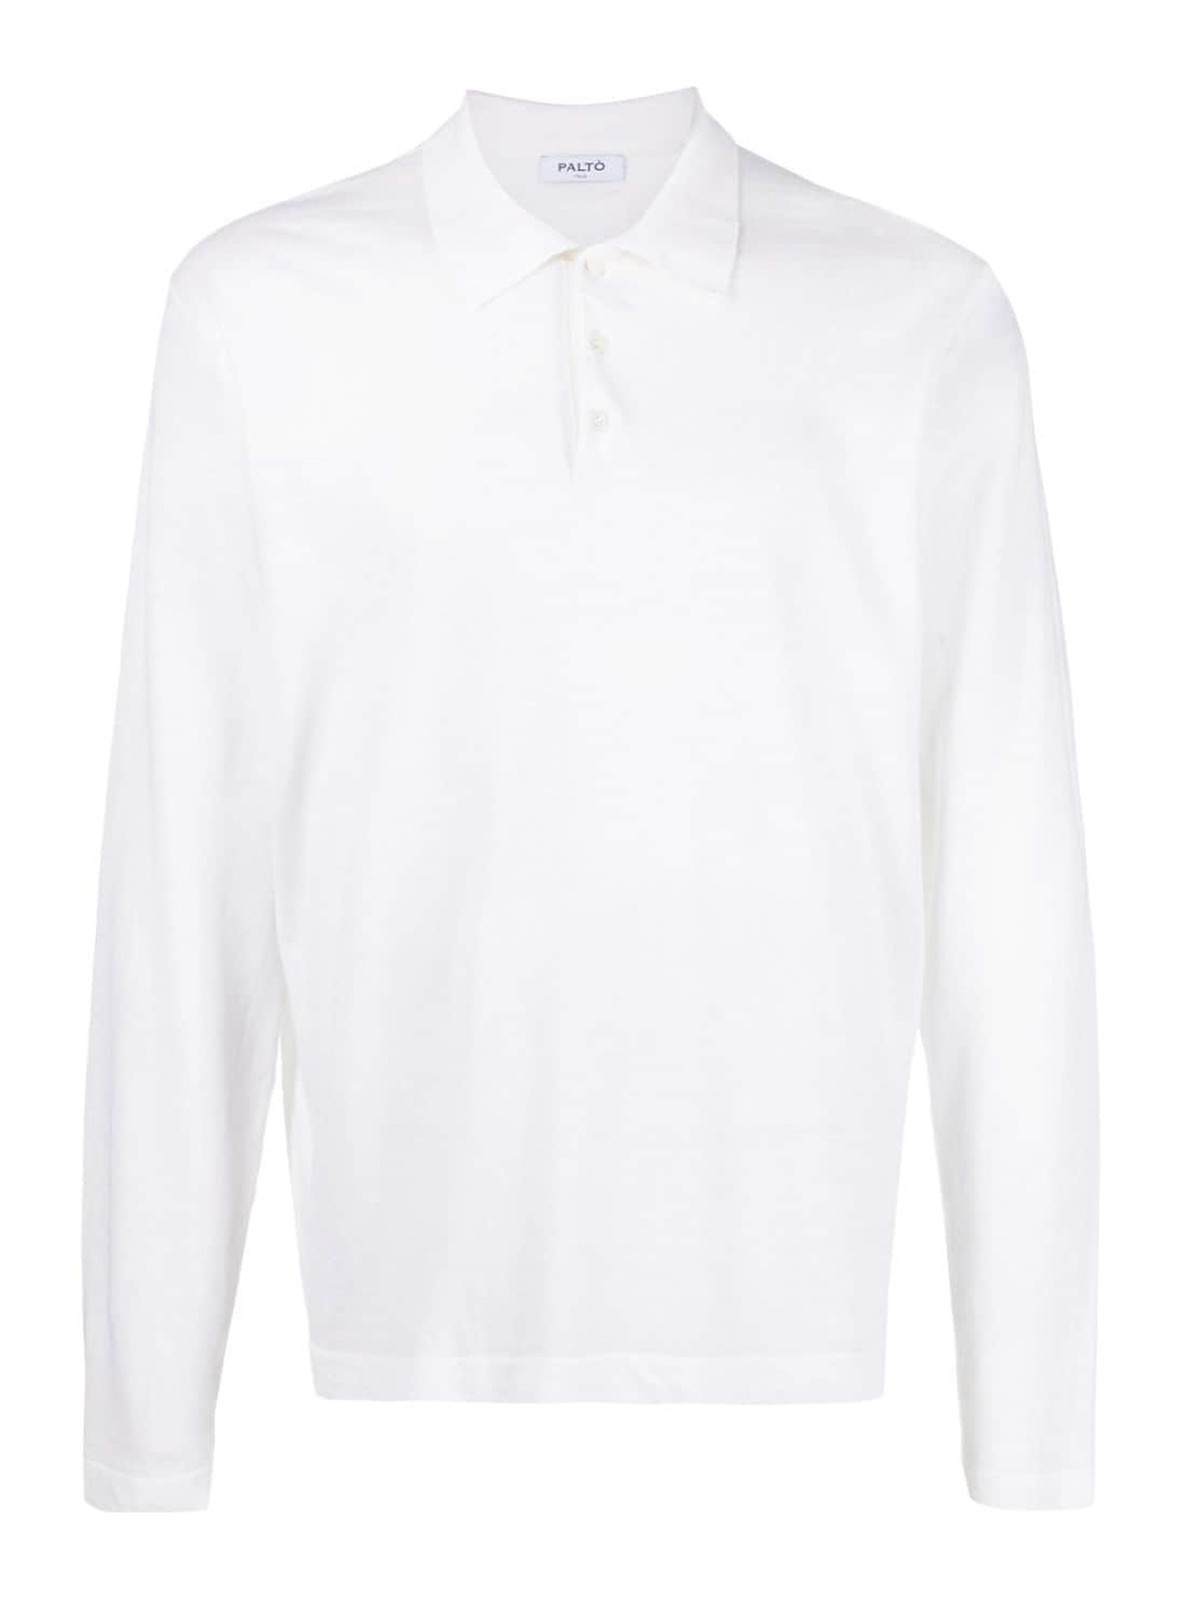 Palto' Long Sleeve Linen Blend Shirt In White